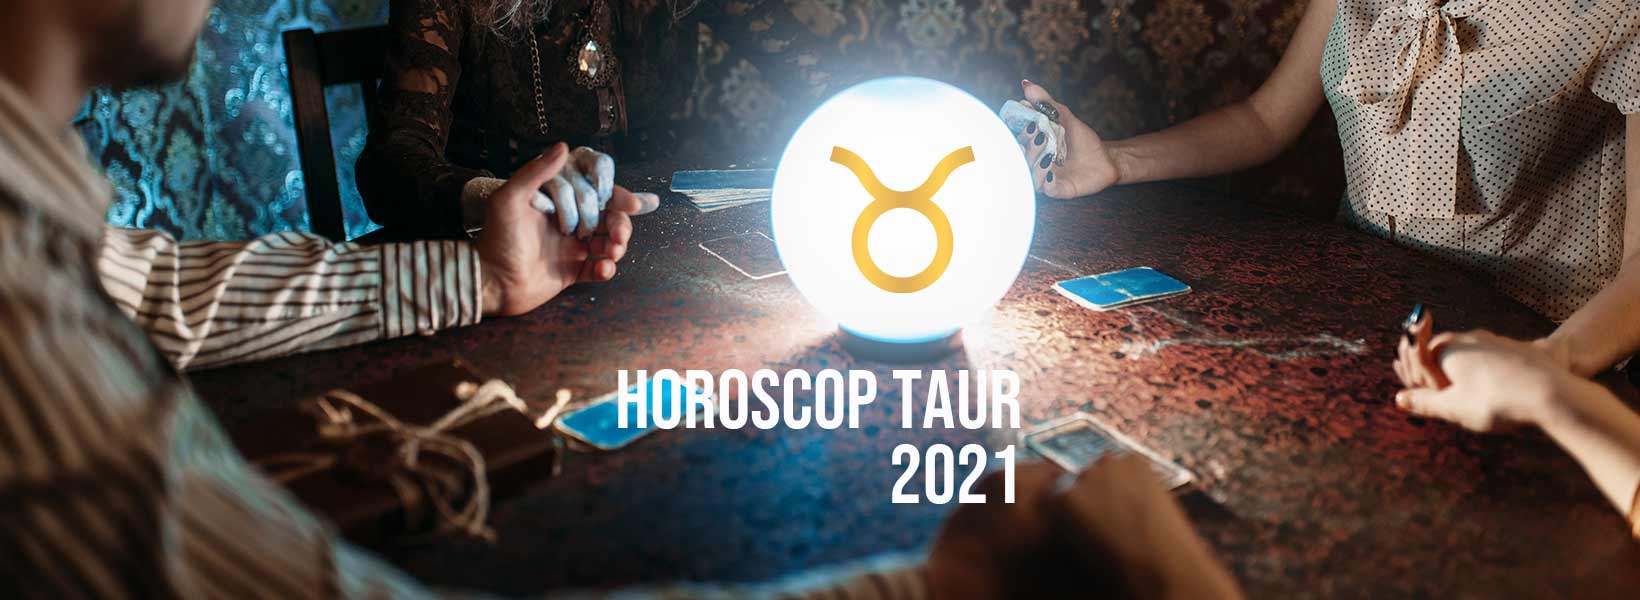 horoscop taur 2021